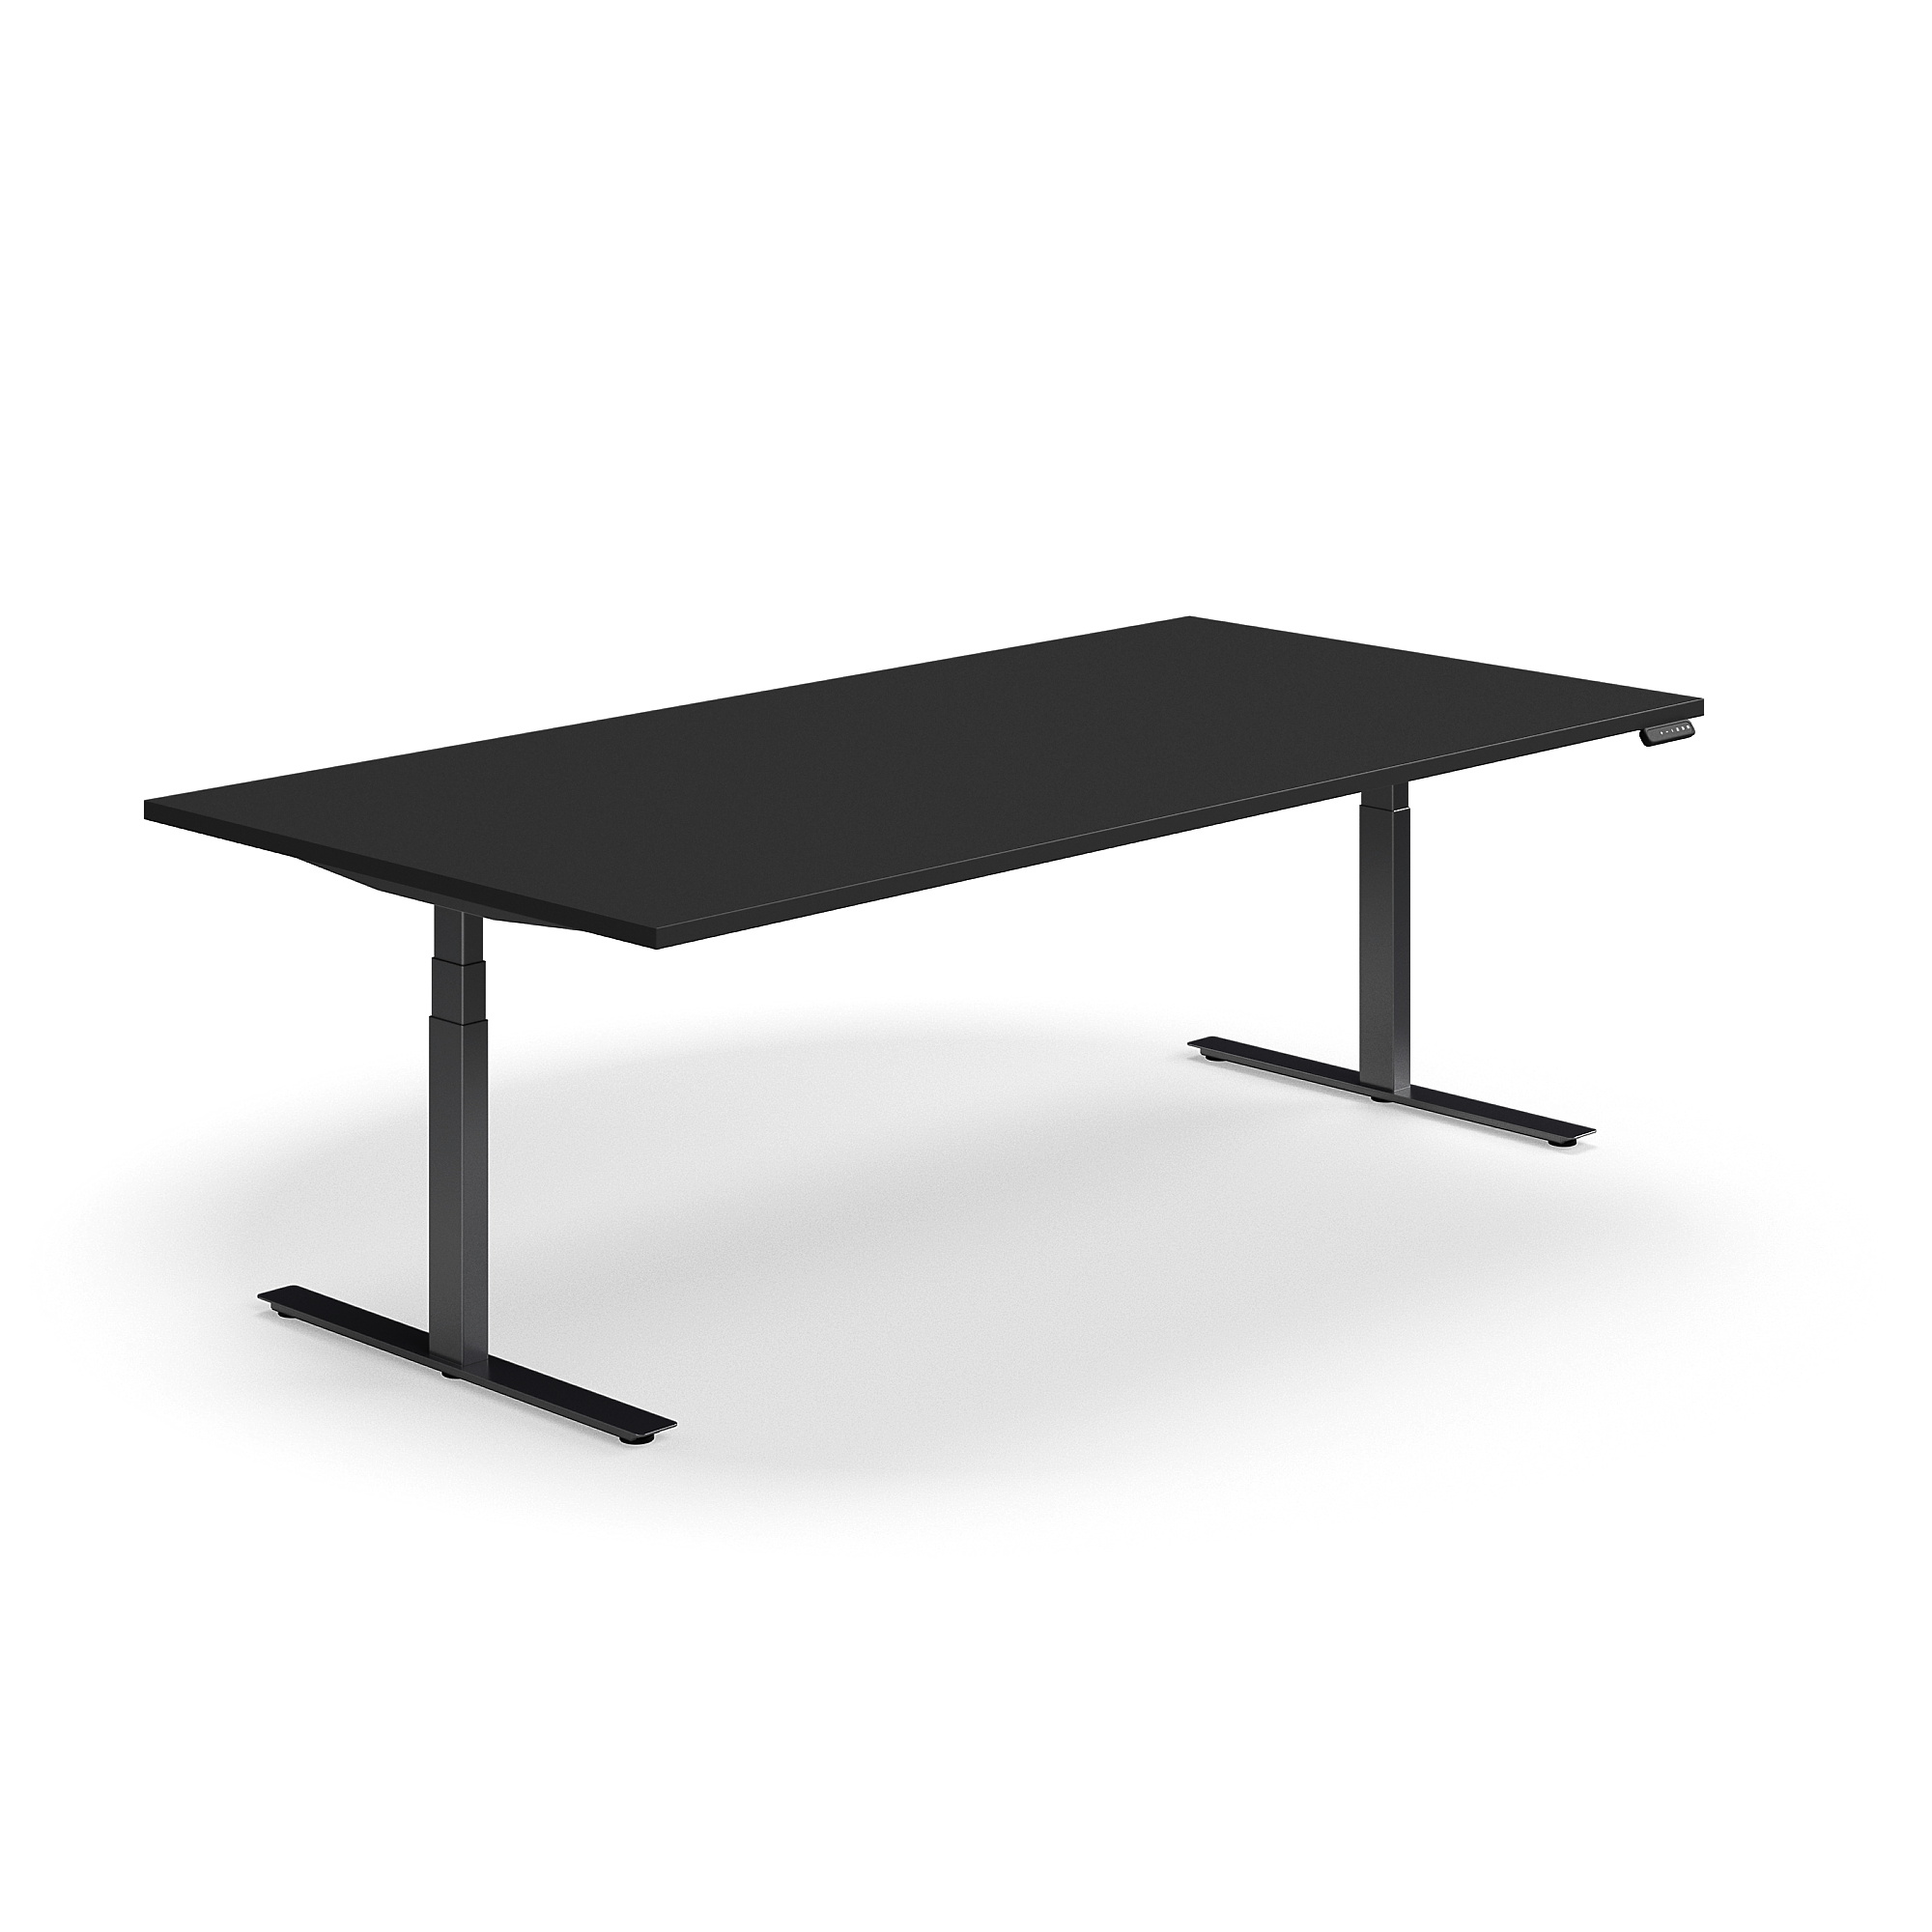 Jednací stůl QBUS, výškově nastavitelný, 2400x1200 mm, obdélníkový, černá podnož, černá